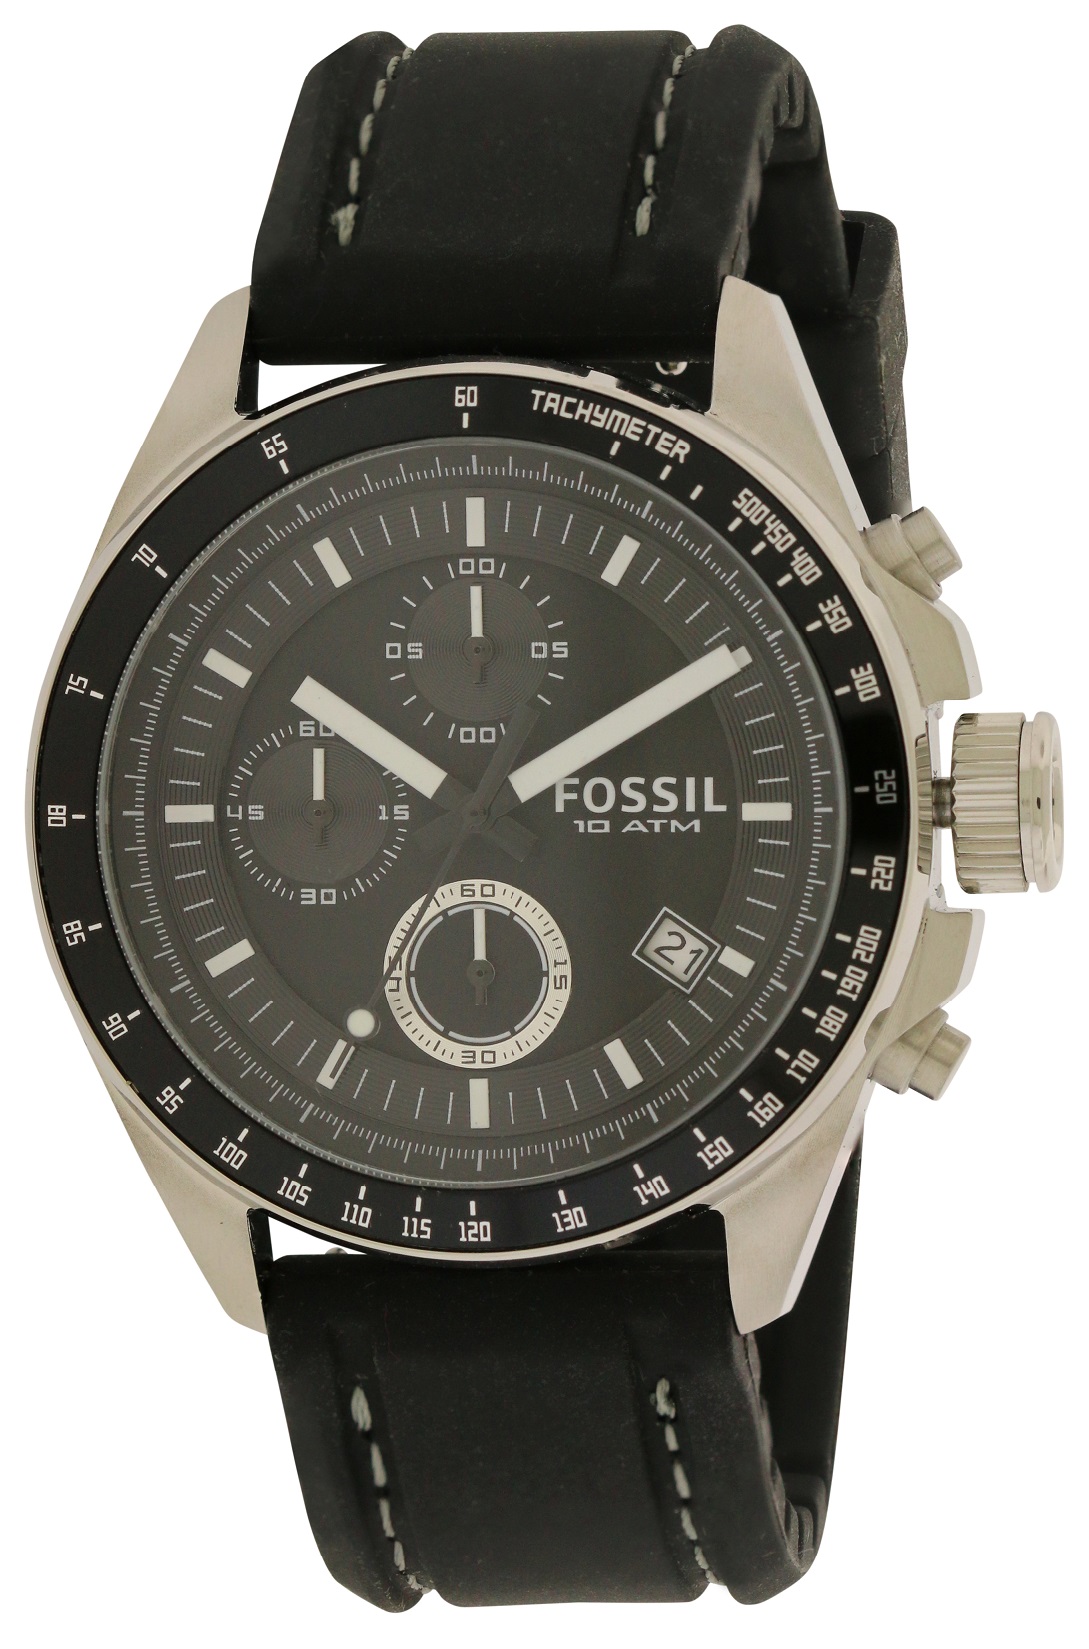 Fossil Decker Black Chronograph Mens Watch CH2573 | eBay